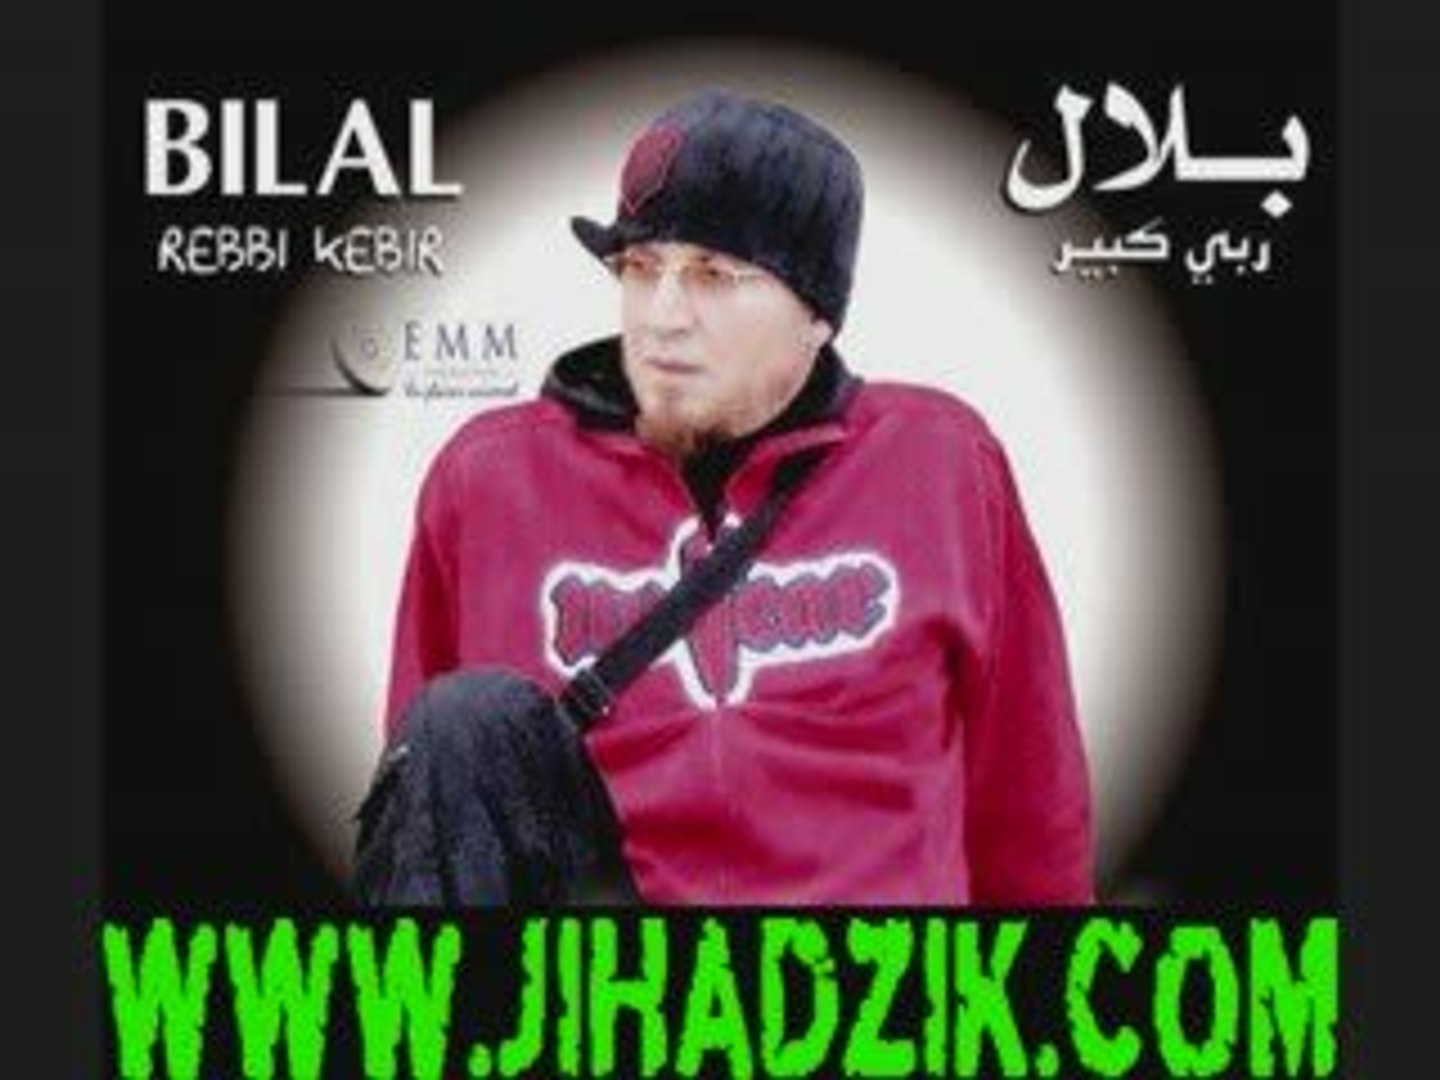 cheb bilal 2009 sur www.jiadzik.com - Vidéo Dailymotion